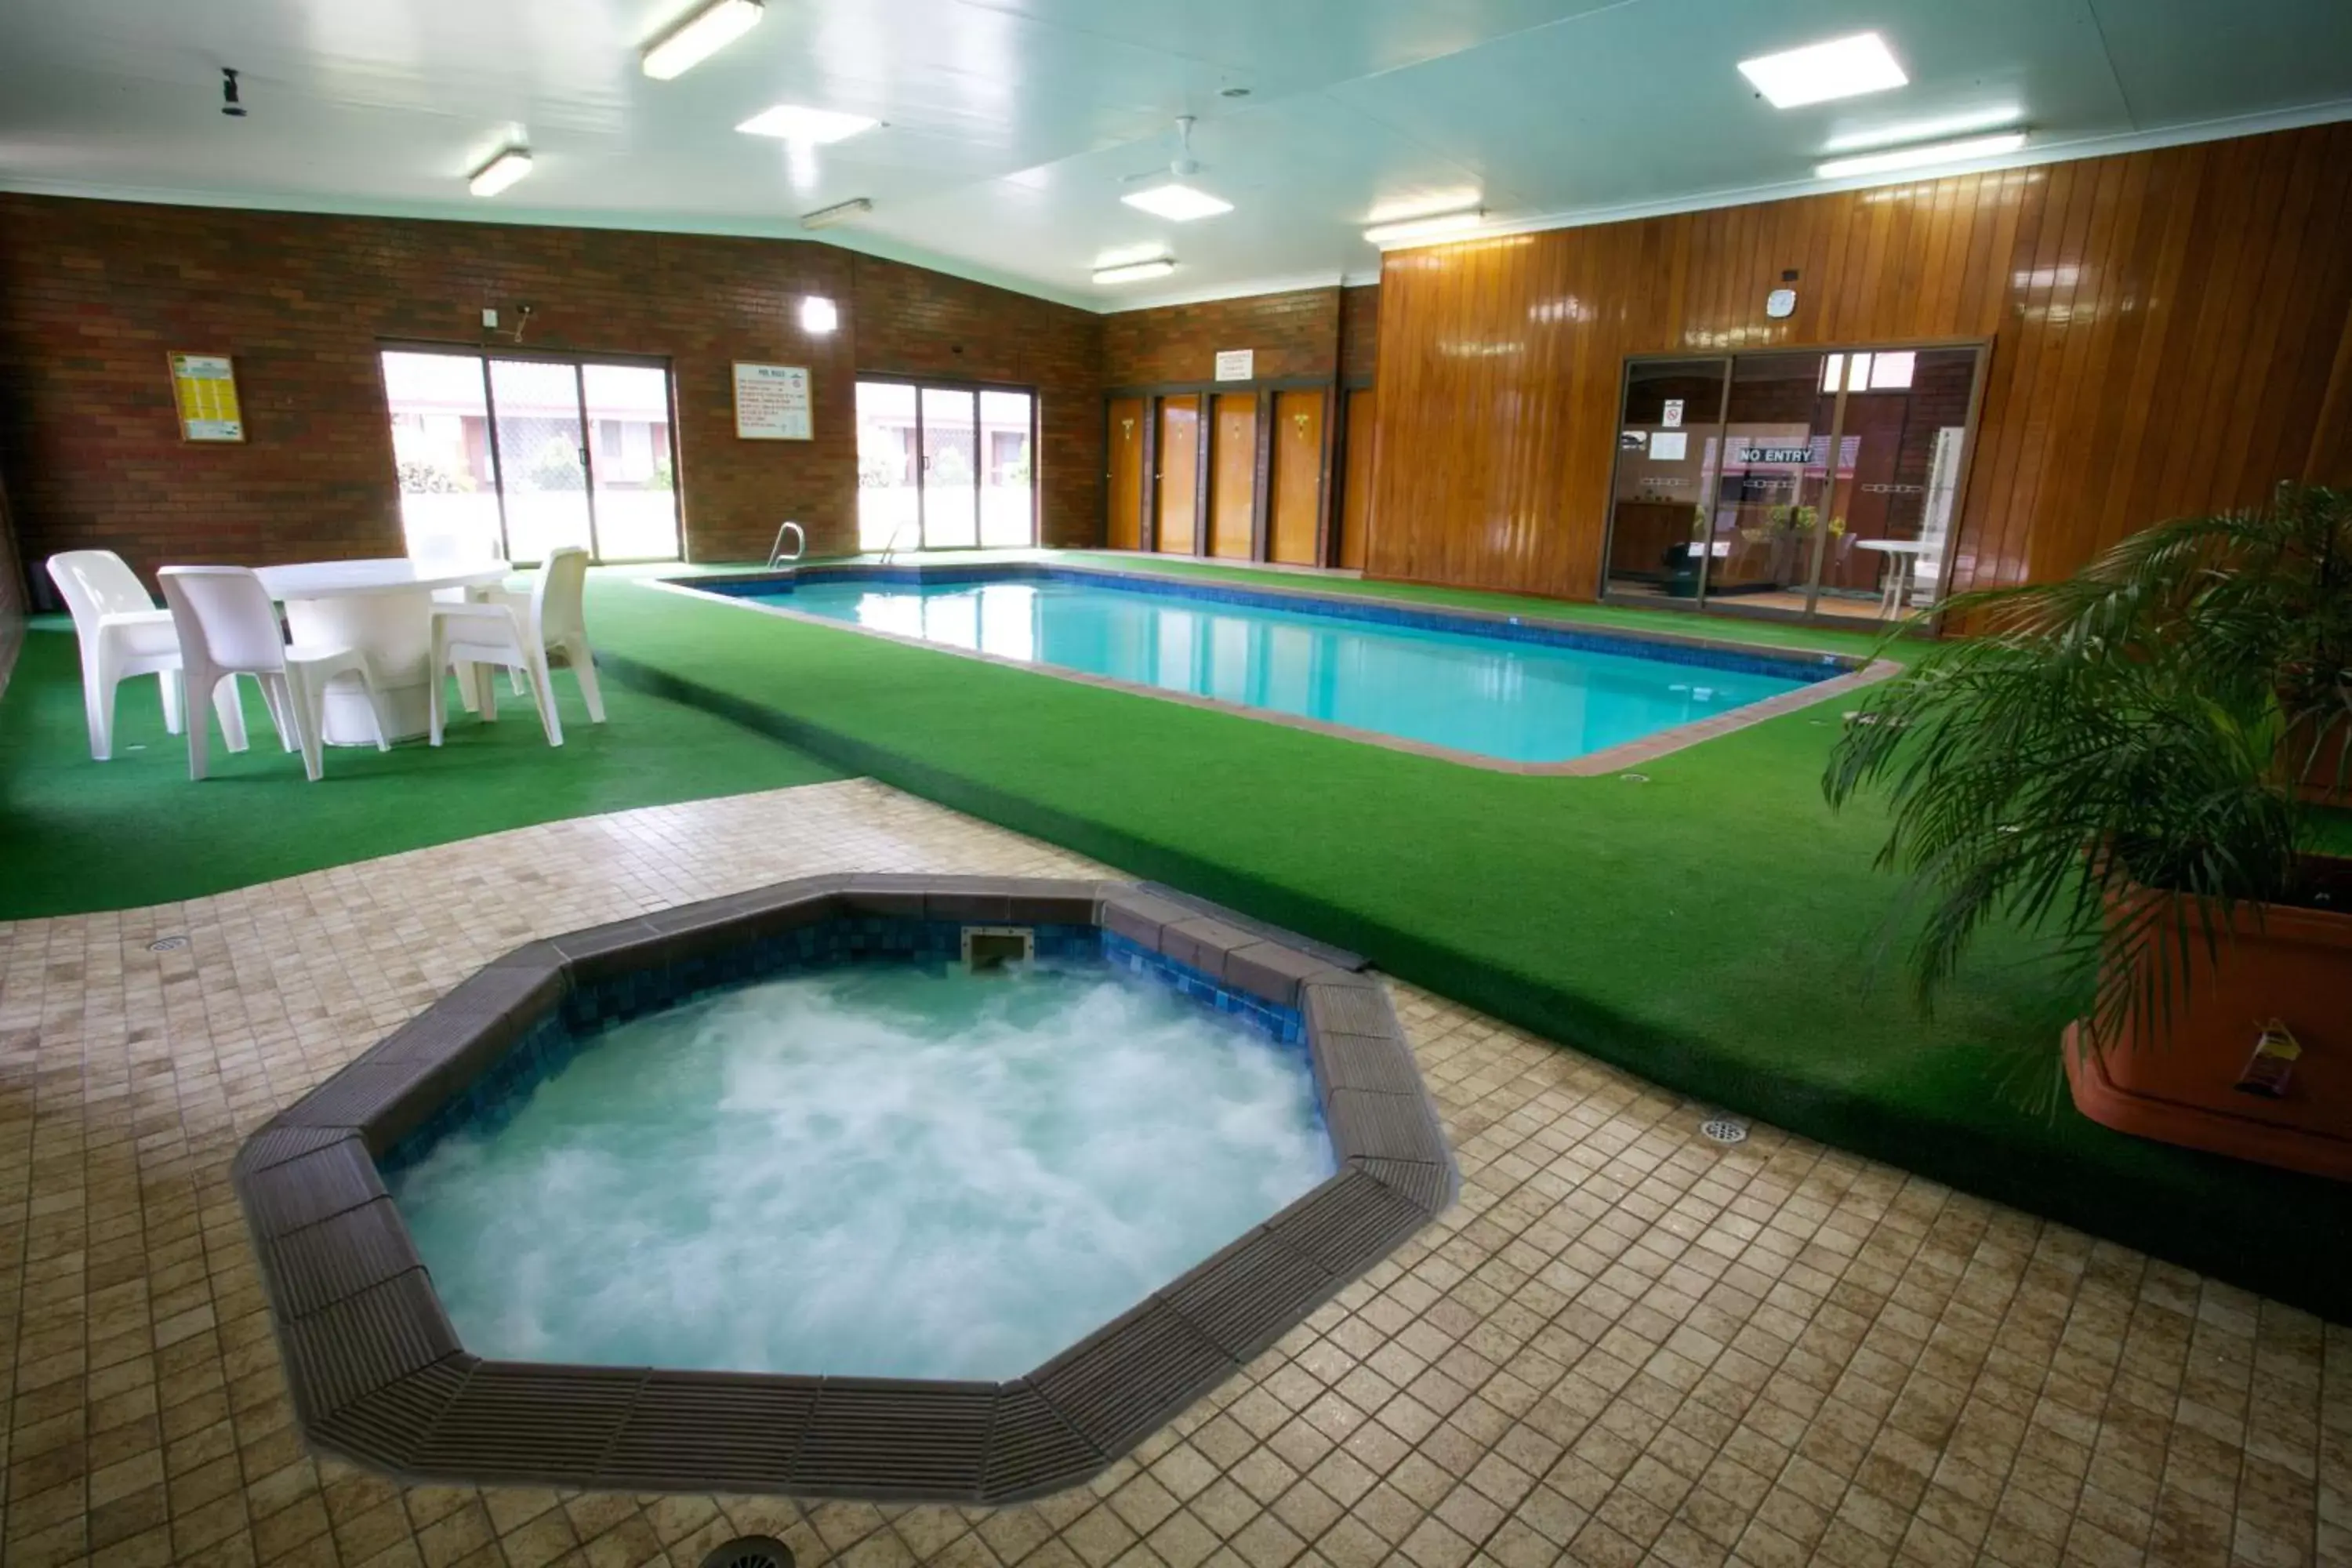 Activities, Swimming Pool in Golden Grain Motor Inn